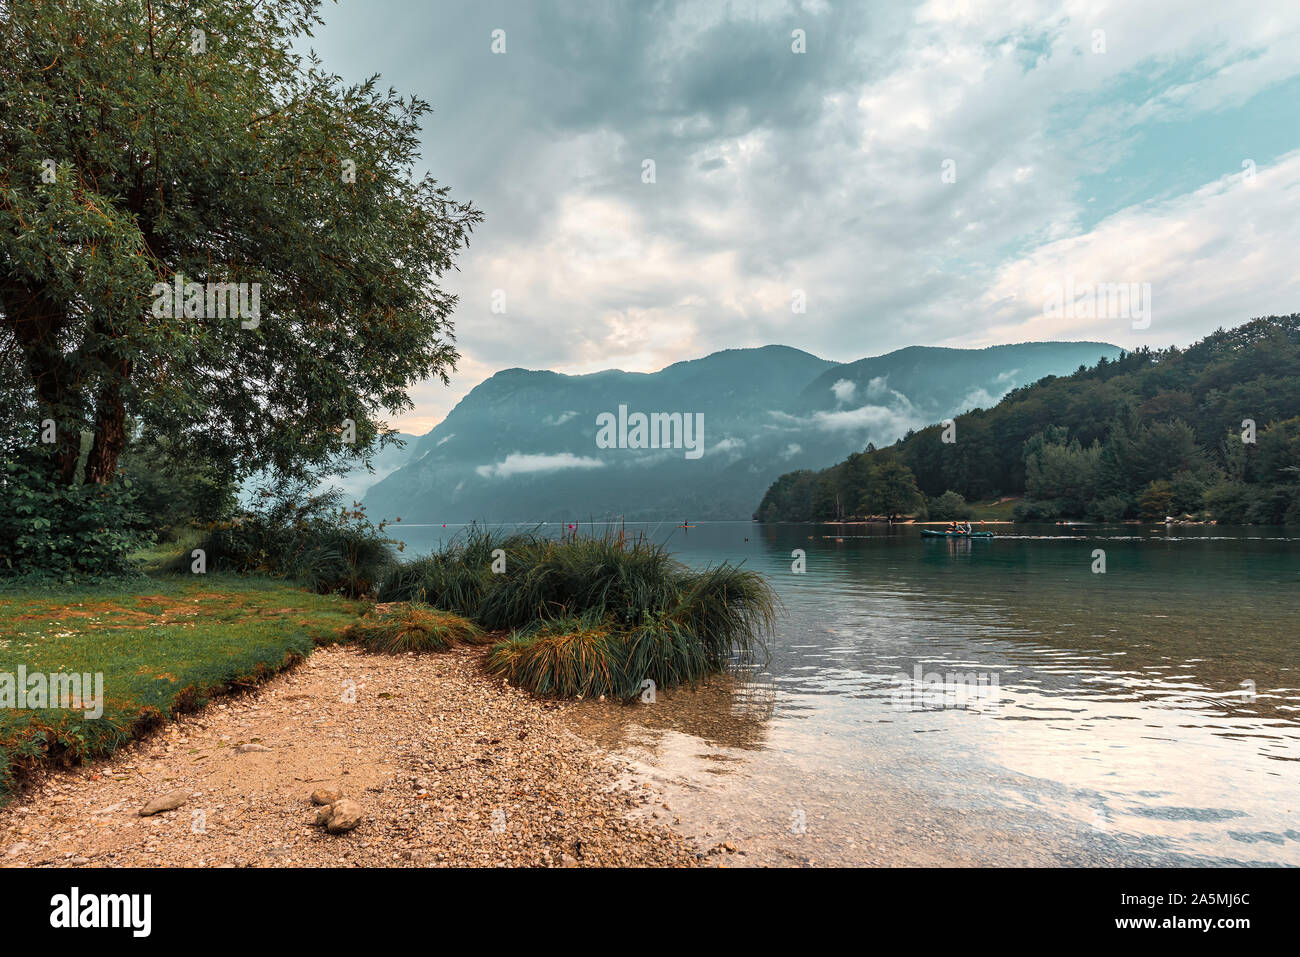 Nublado por la tarde en el lago de Bohinj, Eslovenia. La gente disfruta de las actividades del deporte de agua al aire libre en condiciones de mal tiempo Foto de stock